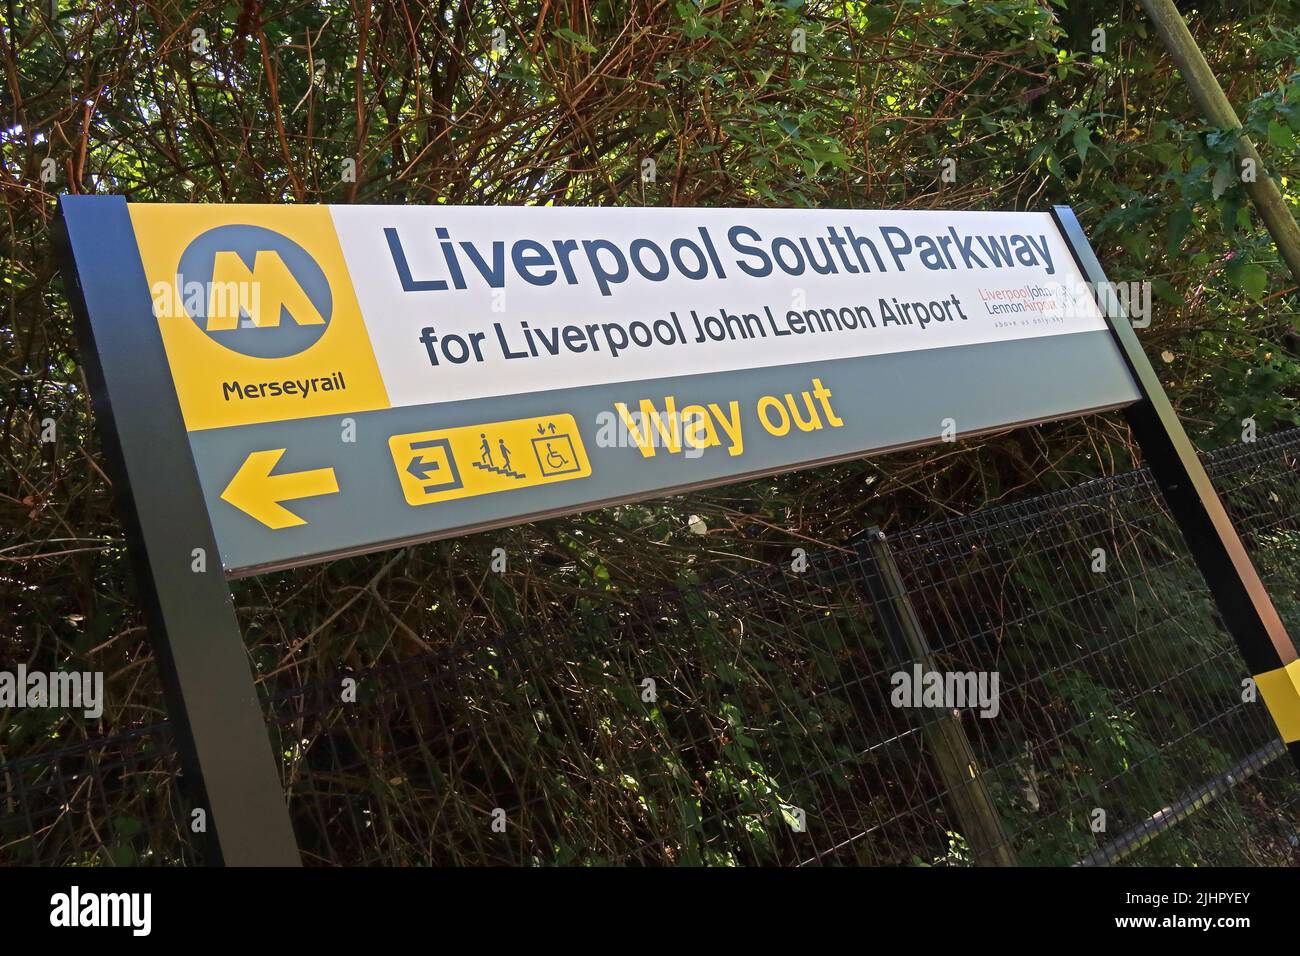 Panneau de plate-forme de la gare de Liverpool South Parkway, Garston, Speke, Merseyside pour l'aéroport de Liverpool John Lennon, Holly Farm Rd, L19 5PQ Banque D'Images